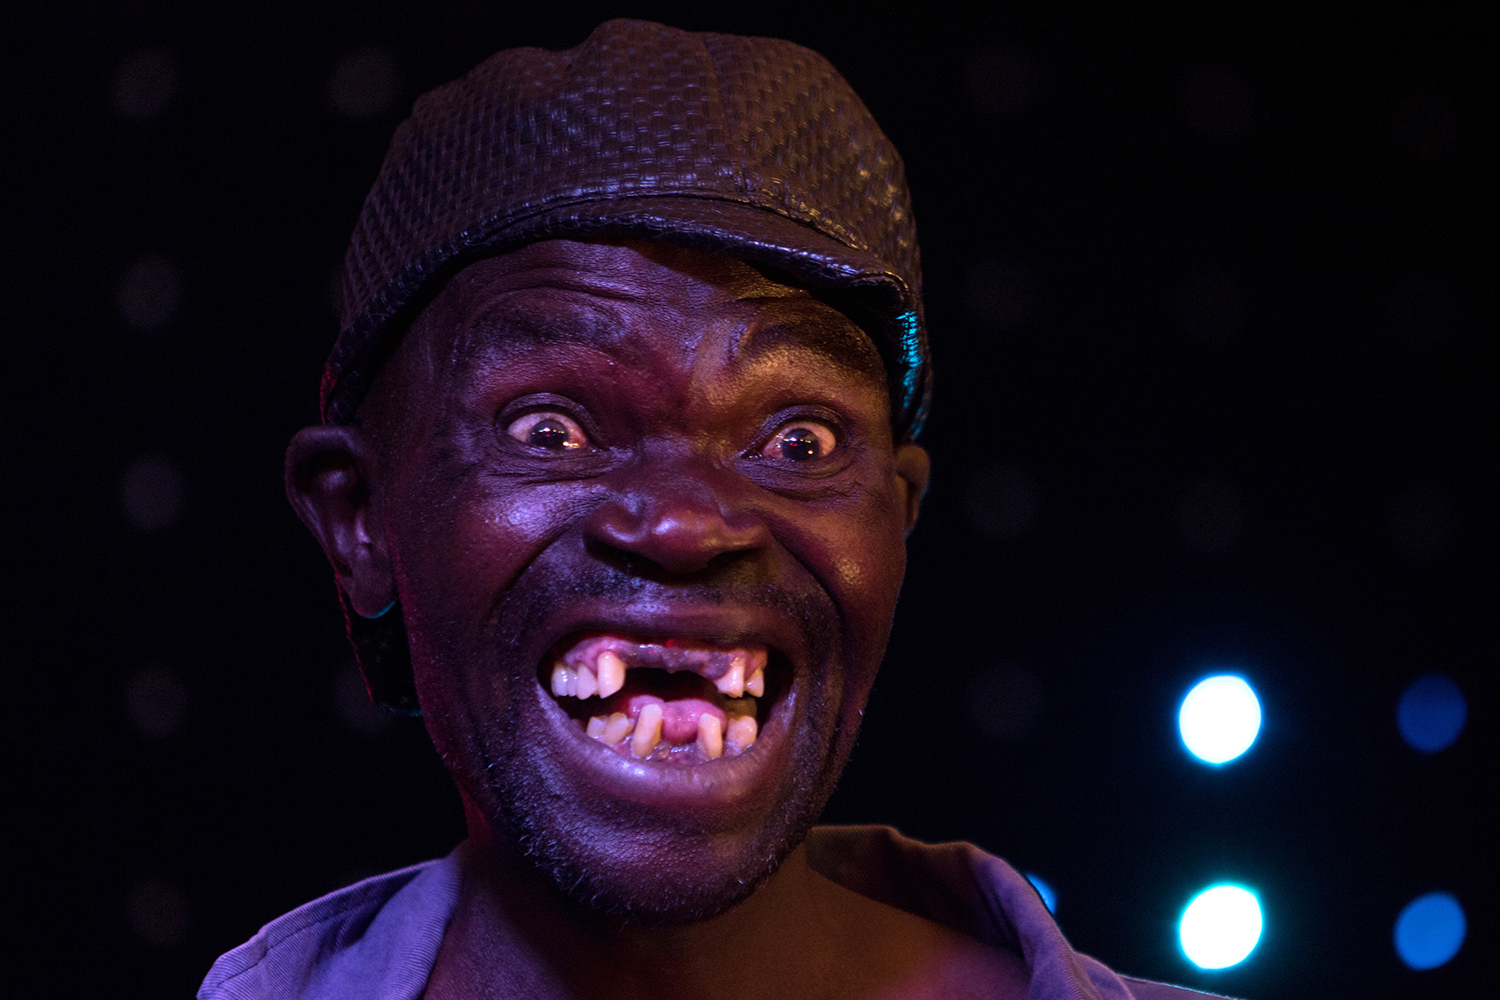 Conflicto en un concurso de feos en Zimbabue por premiar al más 'guapo'